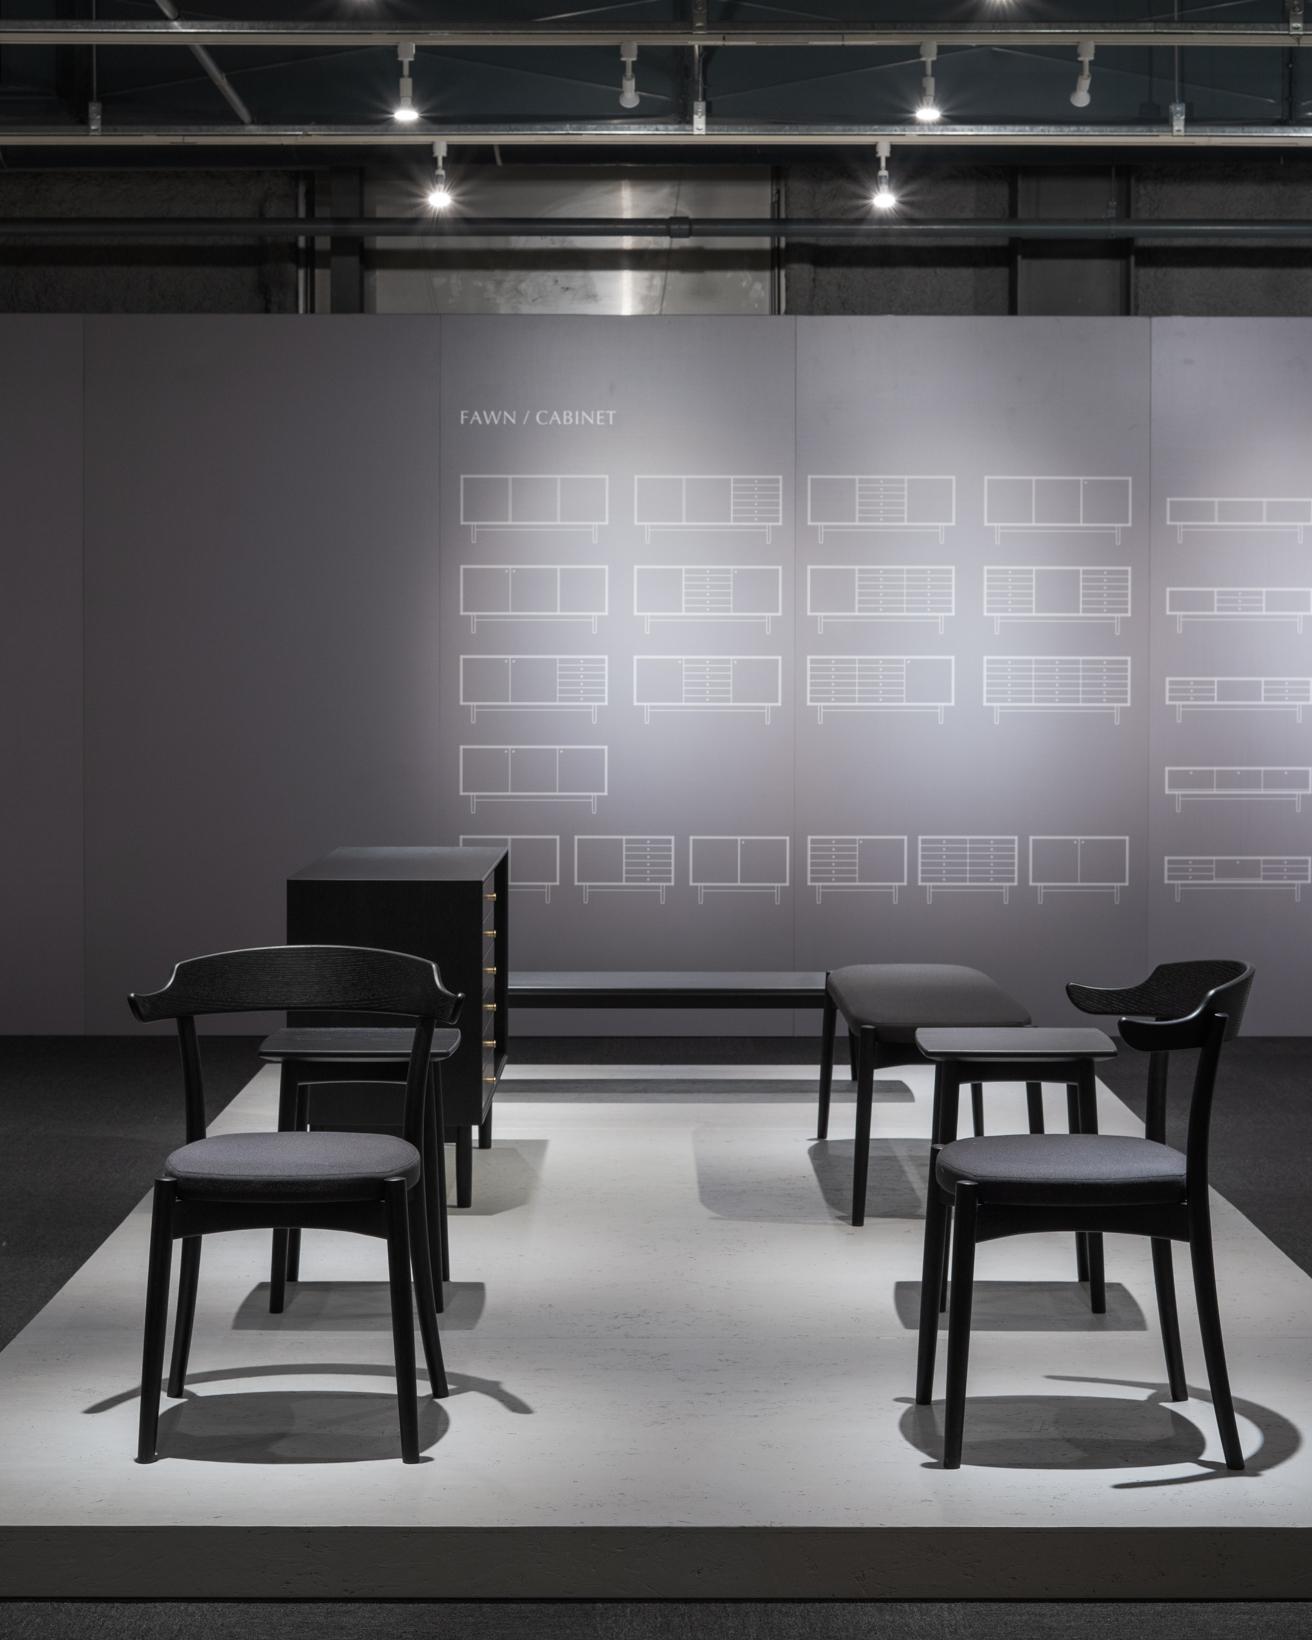 〈匠工芸〉は松岡智之による家具シリーズ「ファウン」を展示。写真の黒く塗装されたシリーズに加え、オーク、ウォルナットと材や色によって表情が豊かに異なることを提示した。また、新たにキャビネットが加わった。